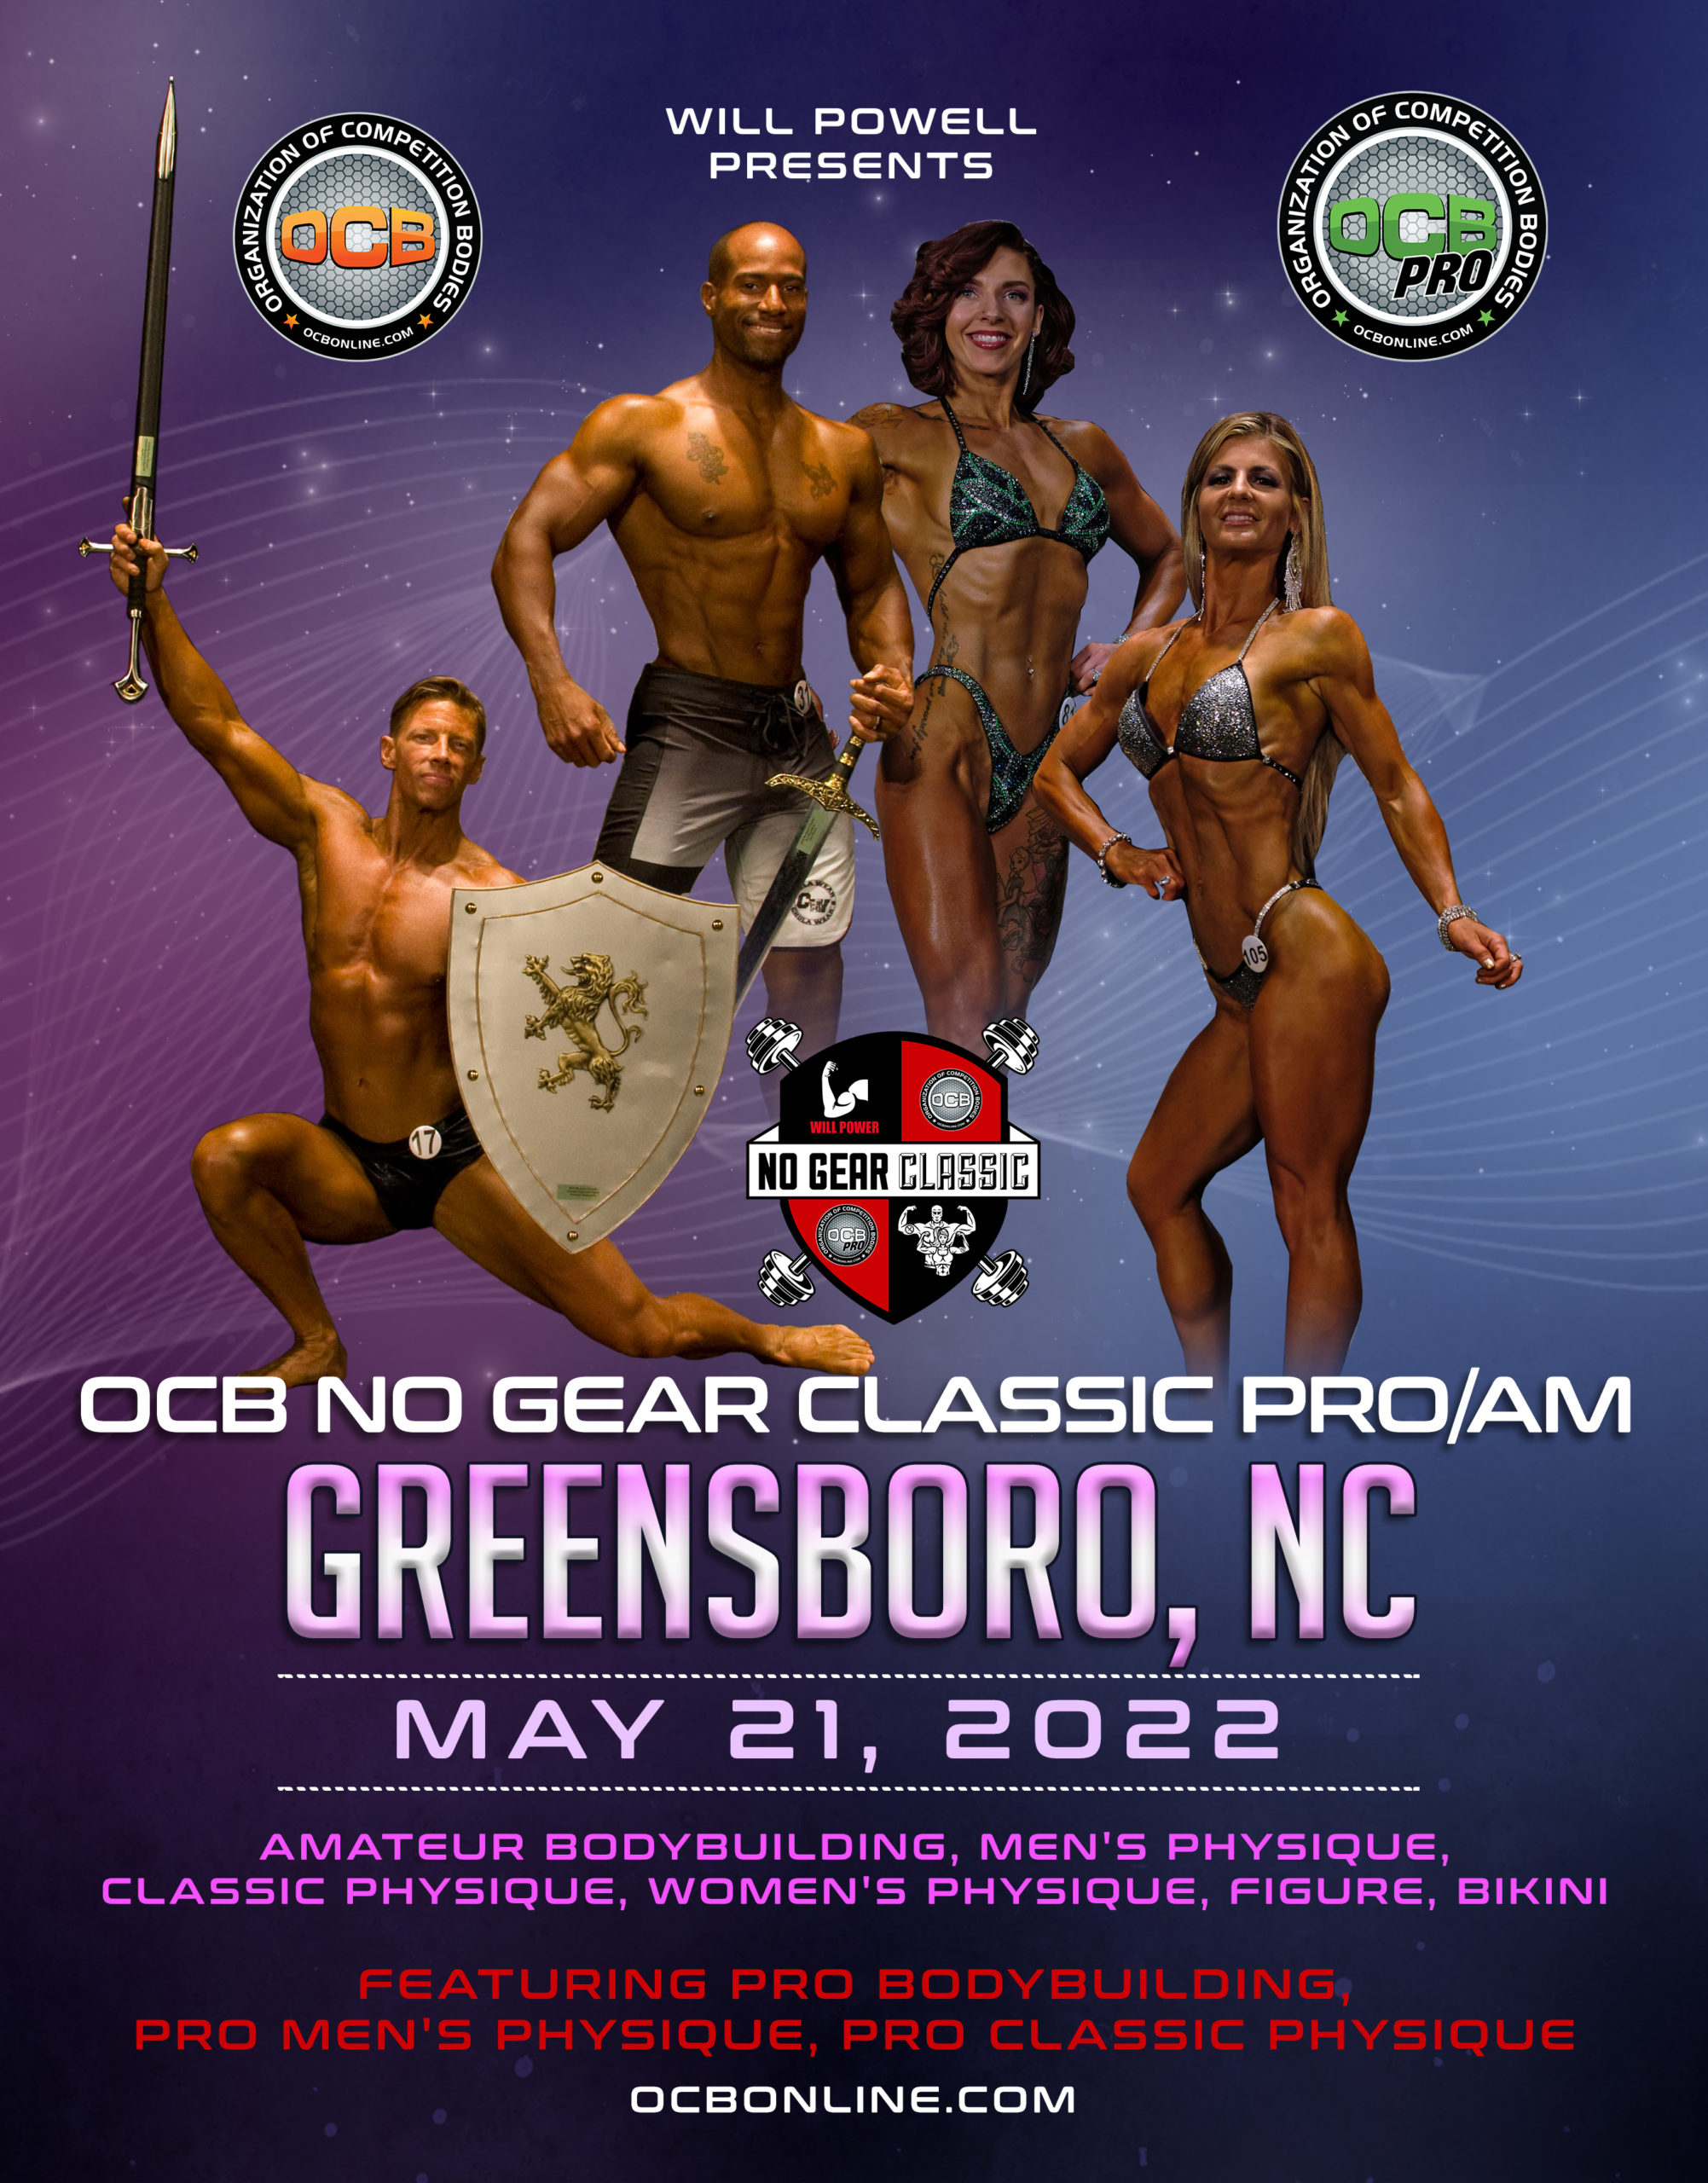 OCB No Gear Classic Pro/AM